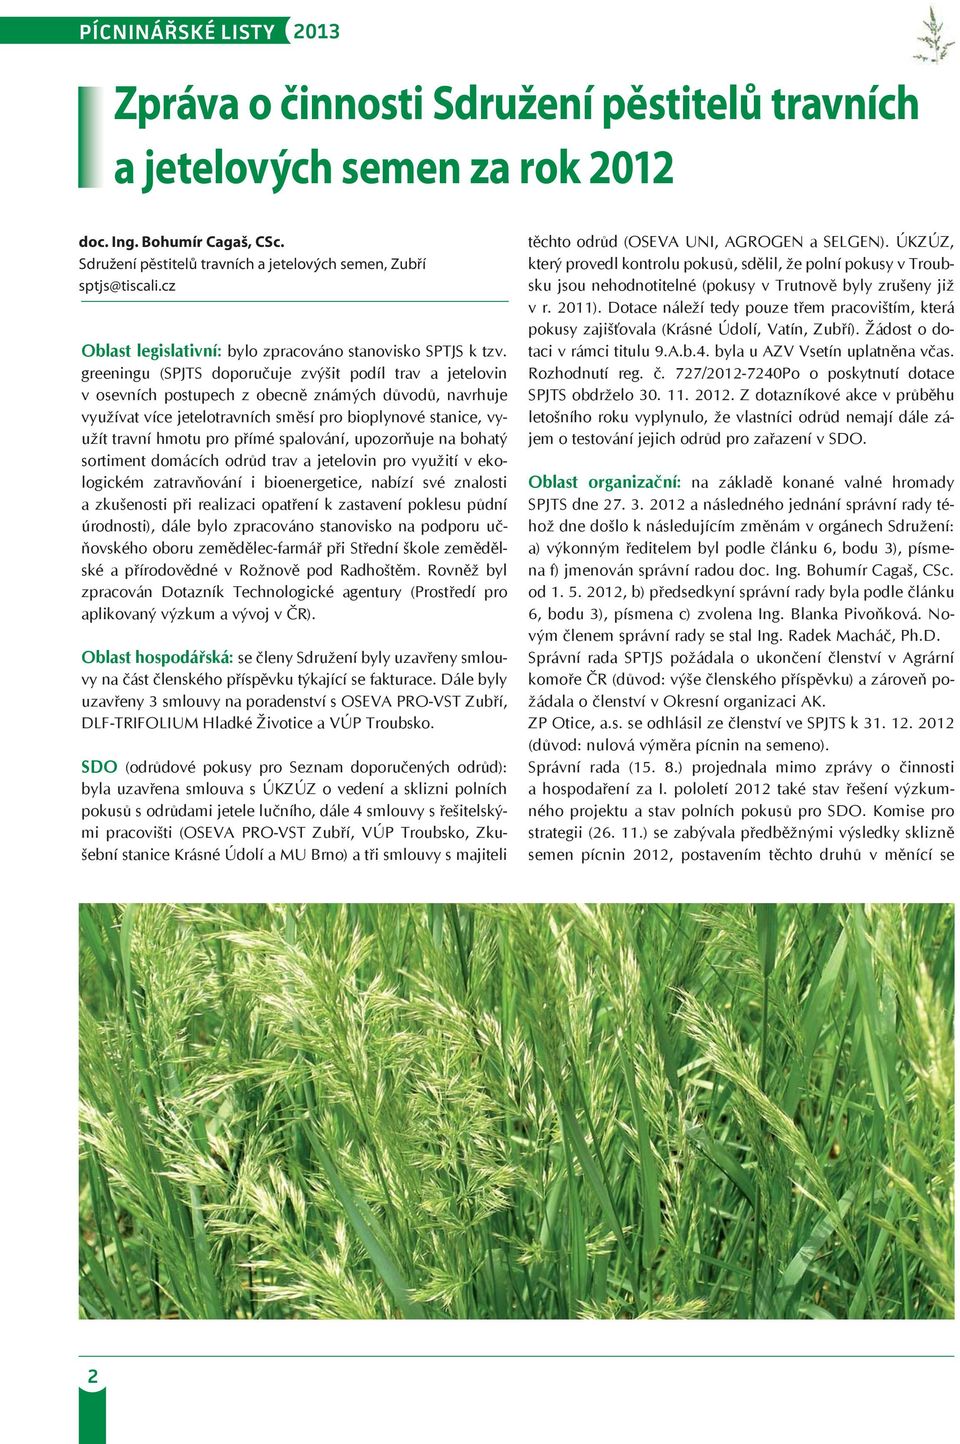 greeningu (SPJTS doporučuje zvýšit podíl trav a jetelovin v osevních postupech z obecně známých důvodů, navrhuje využívat více jetelotravních směsí pro bioplynové stanice, využít travní hmotu pro